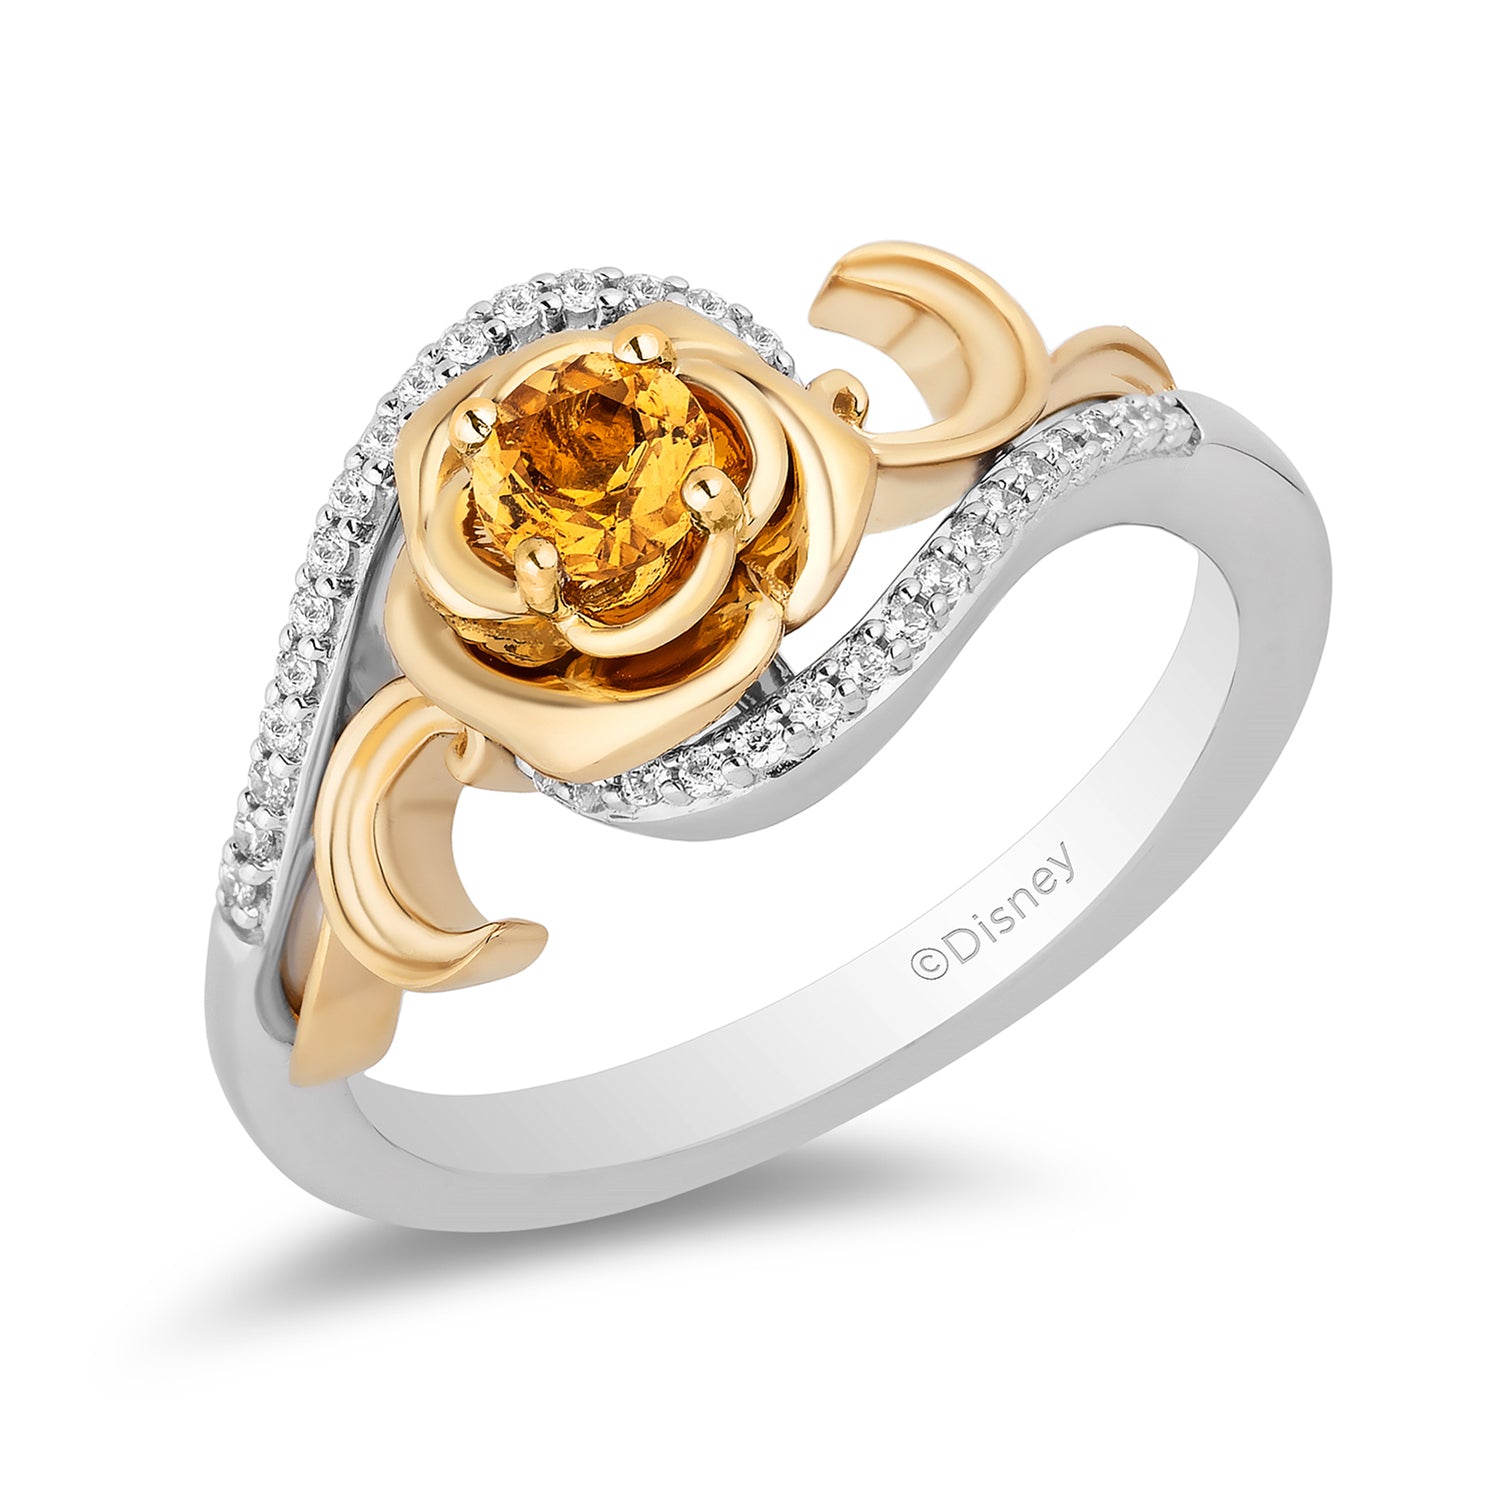 Disney Belle Inspired Diamond & Citrine Rose Ring 10K Yellow Gold